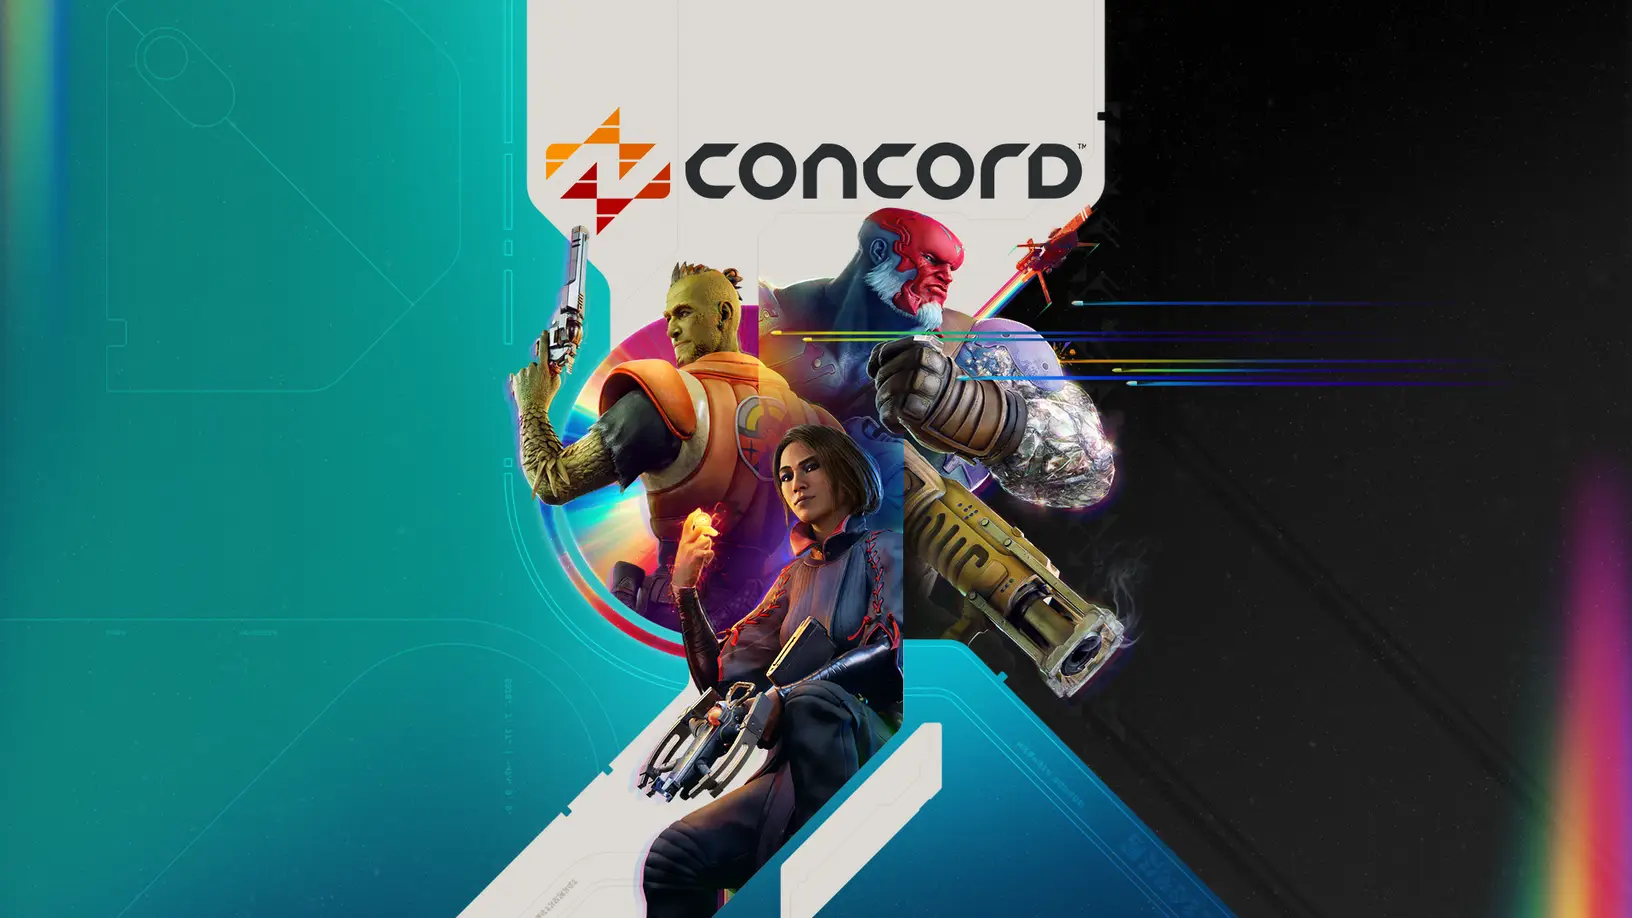 Firewalk Studios opublikowało wymagania systemowe dla wersji beta strzelanki Concord: mamy nadzieję, że gra zostanie zoptymalizowana przed premierą